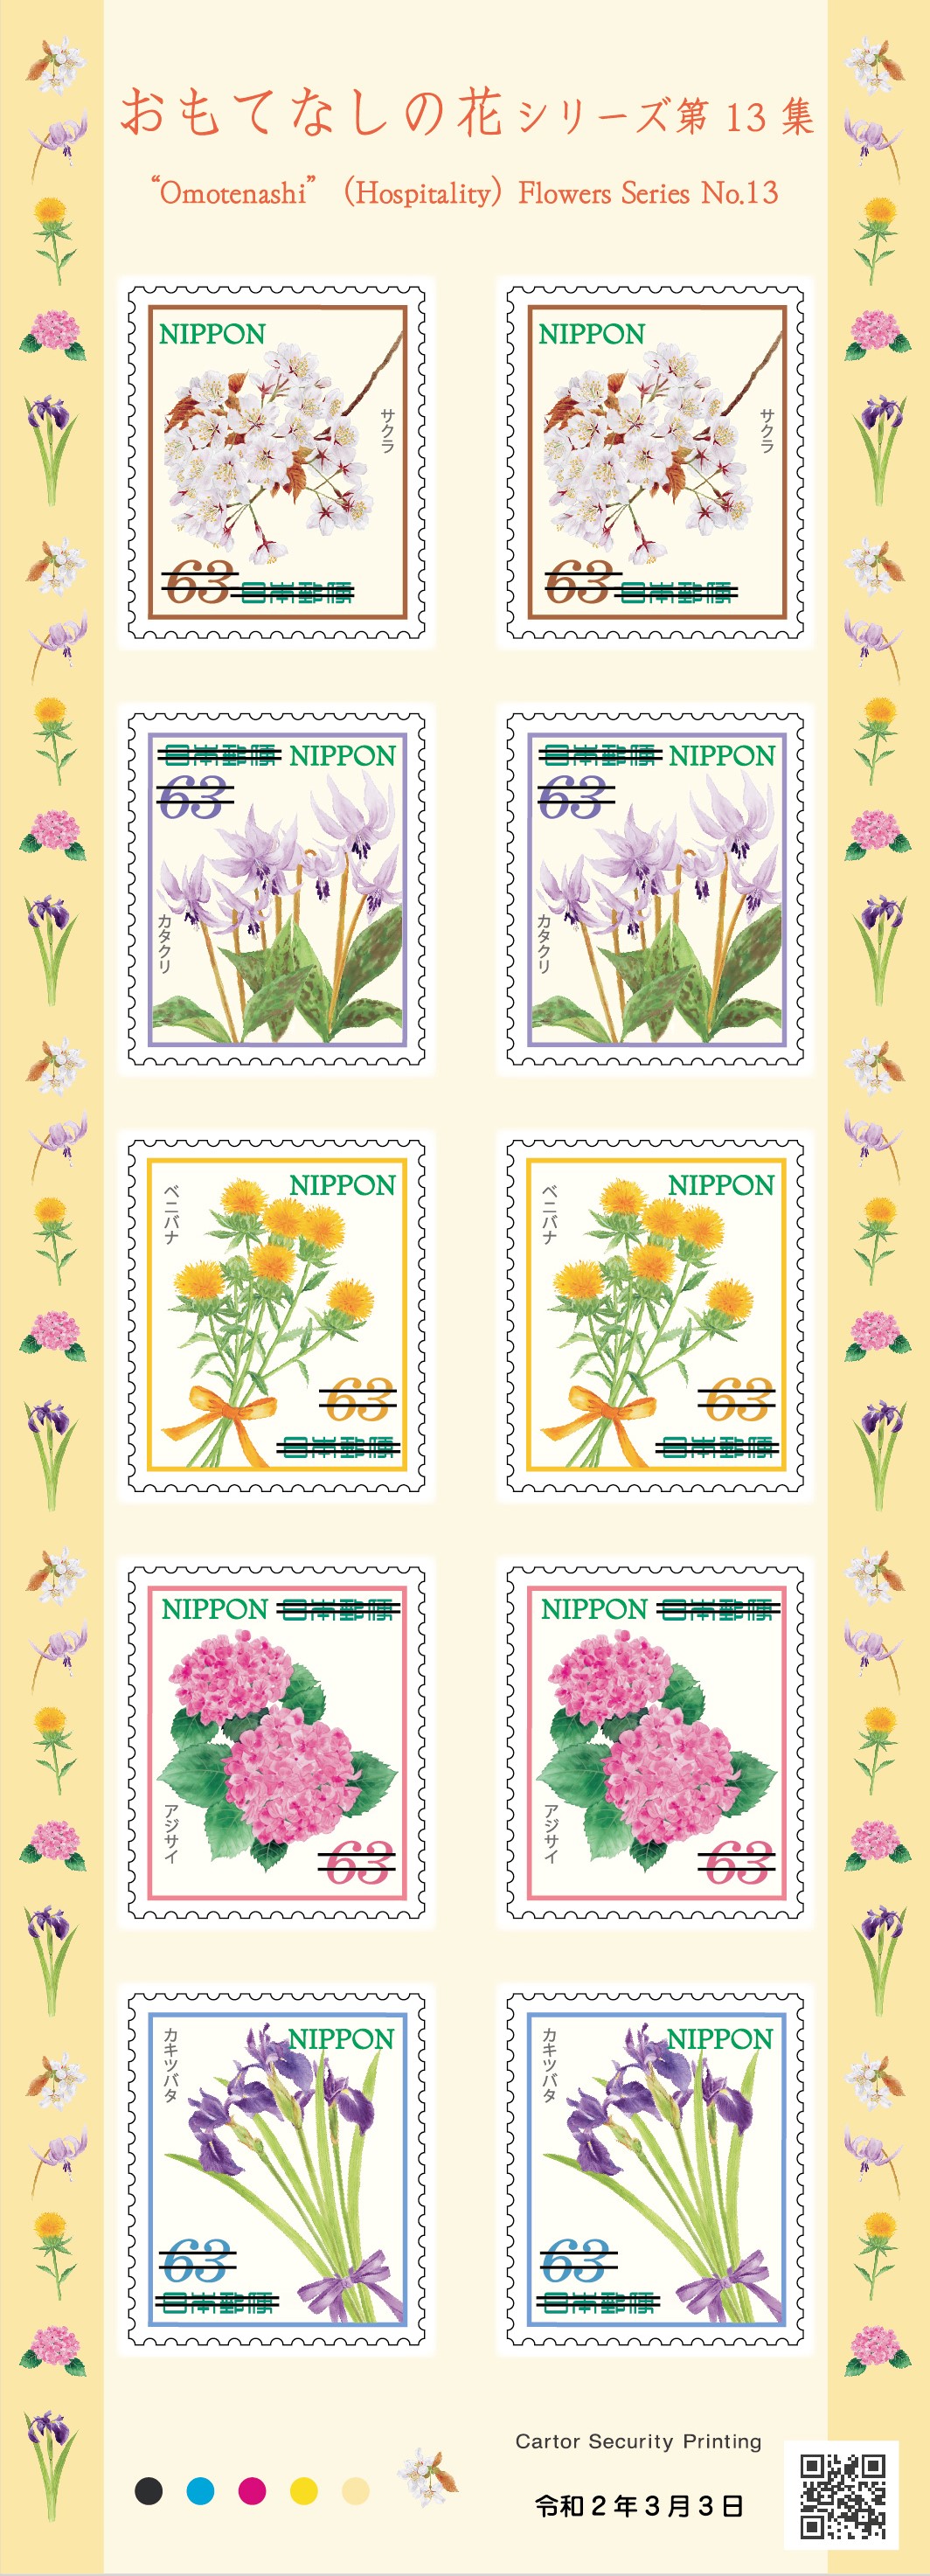 特殊切手 おもてなしの花シリーズ 第13集 | 日本郵便株式会社